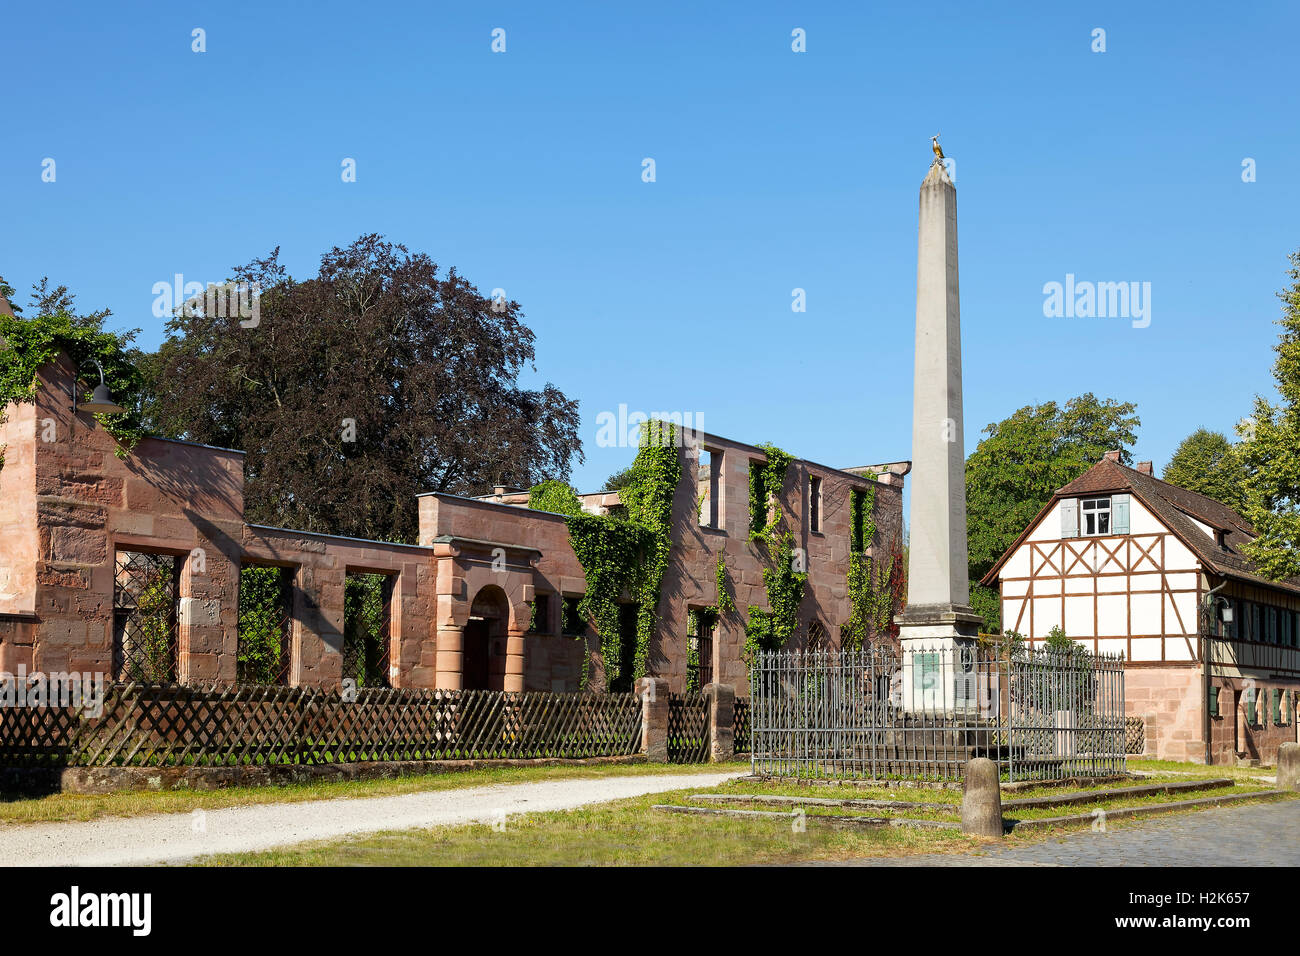 Ruine, Herrenhaus der Hammer-Familie, mit Obelisk und ehemaliger coach House, historische Fabrik Hammer, Laufamholz, Nürnberg Stockfoto